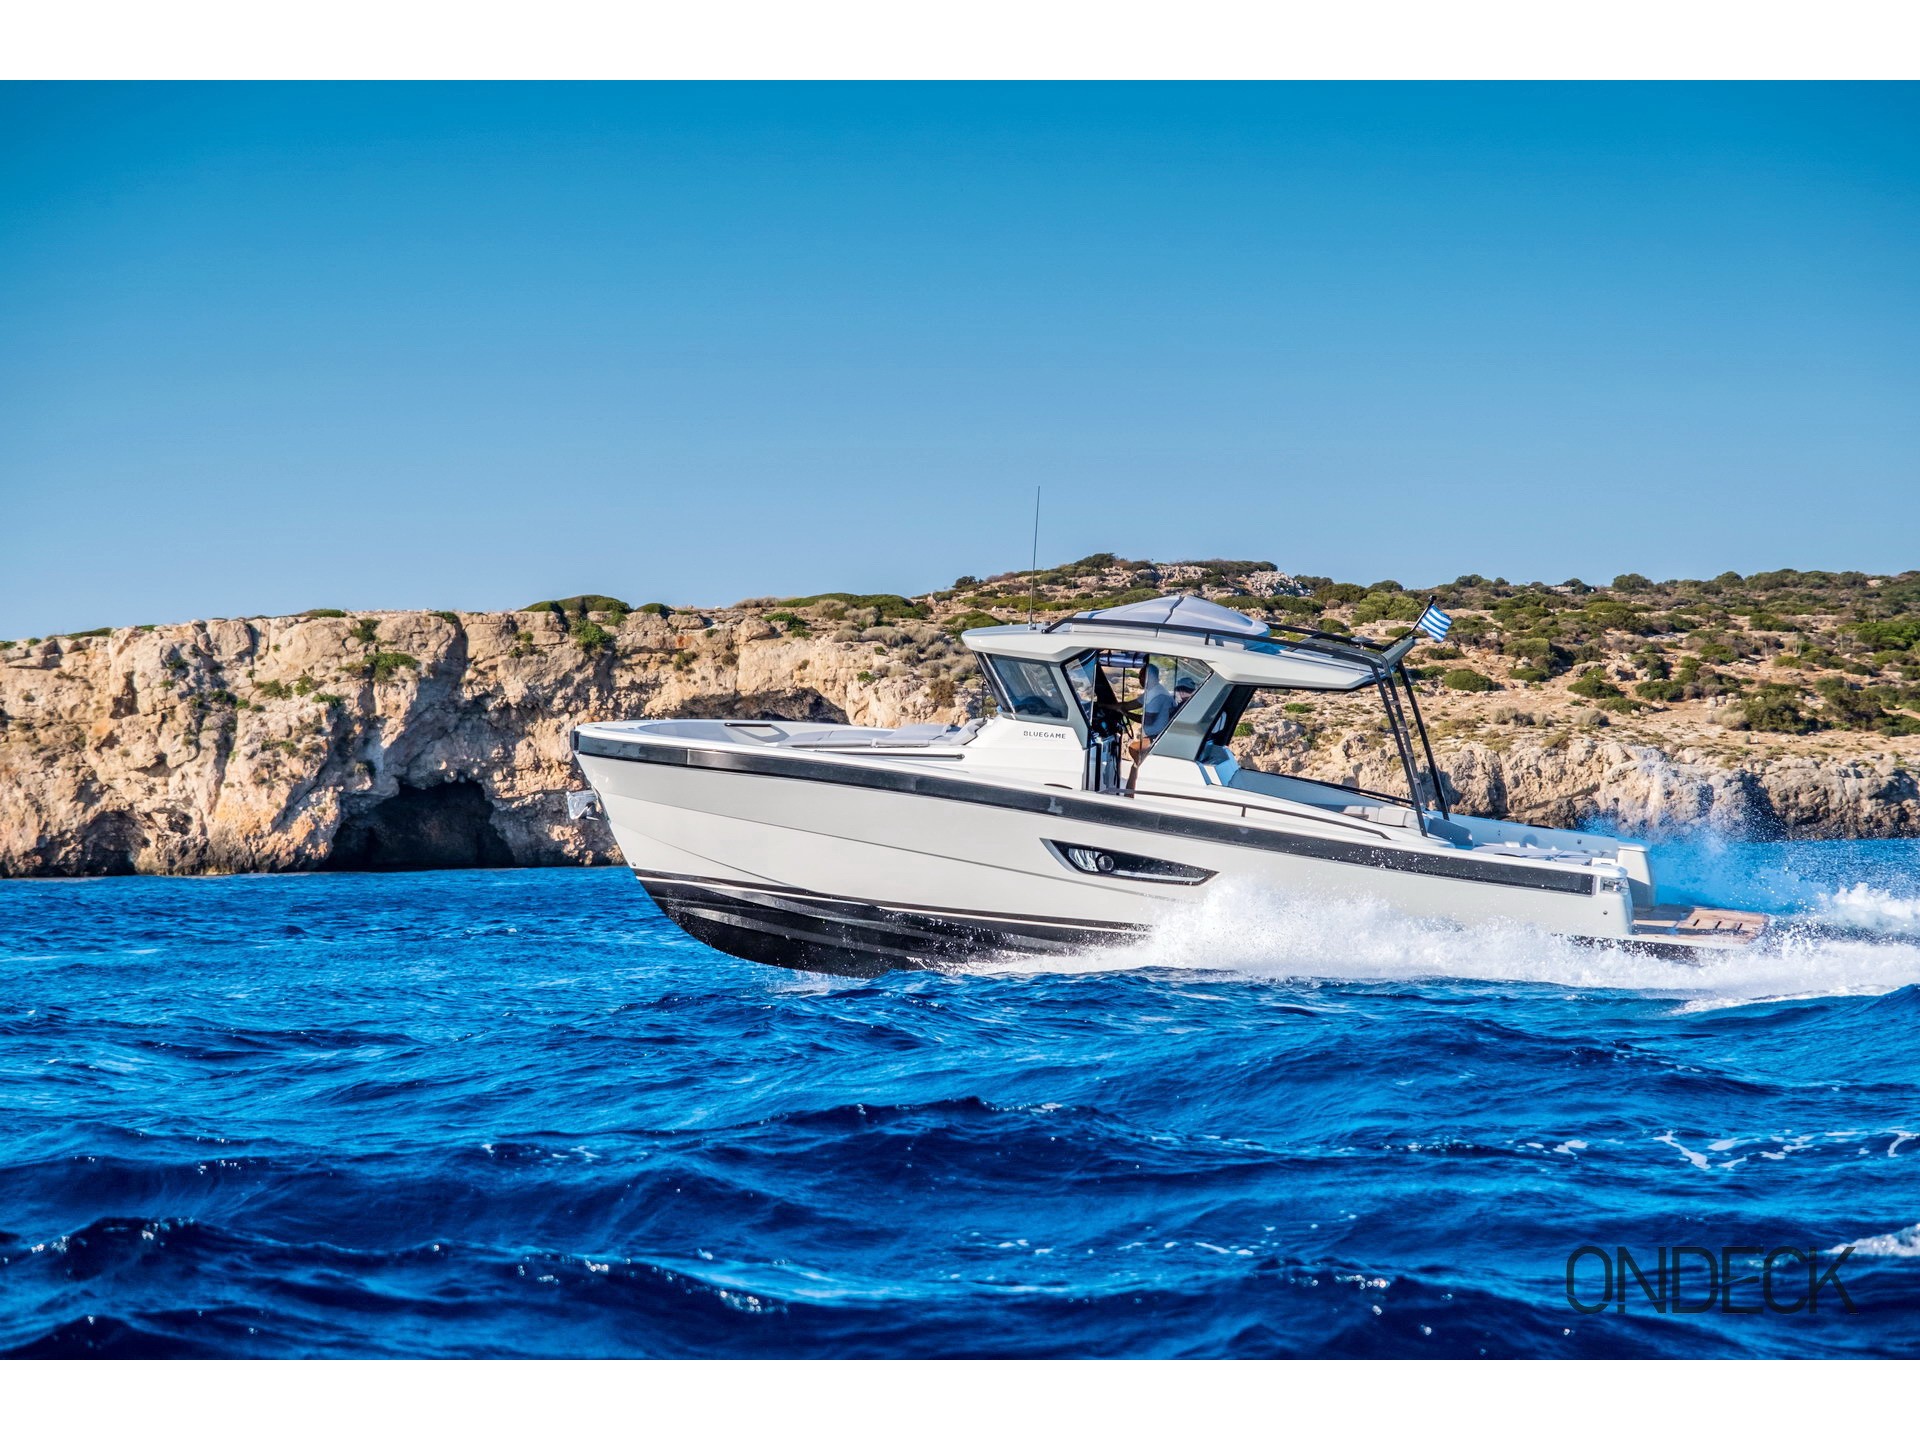 Bluegame BG42 - Motor Boat Charter worldwide & Boat hire in Greece Cyclades Islands Mykonos Mykonos 1